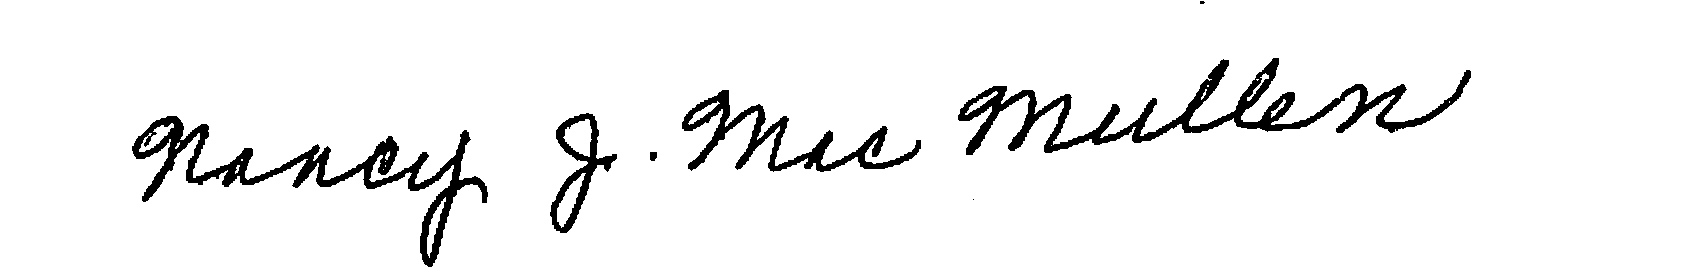 Nancy MacMullen signature